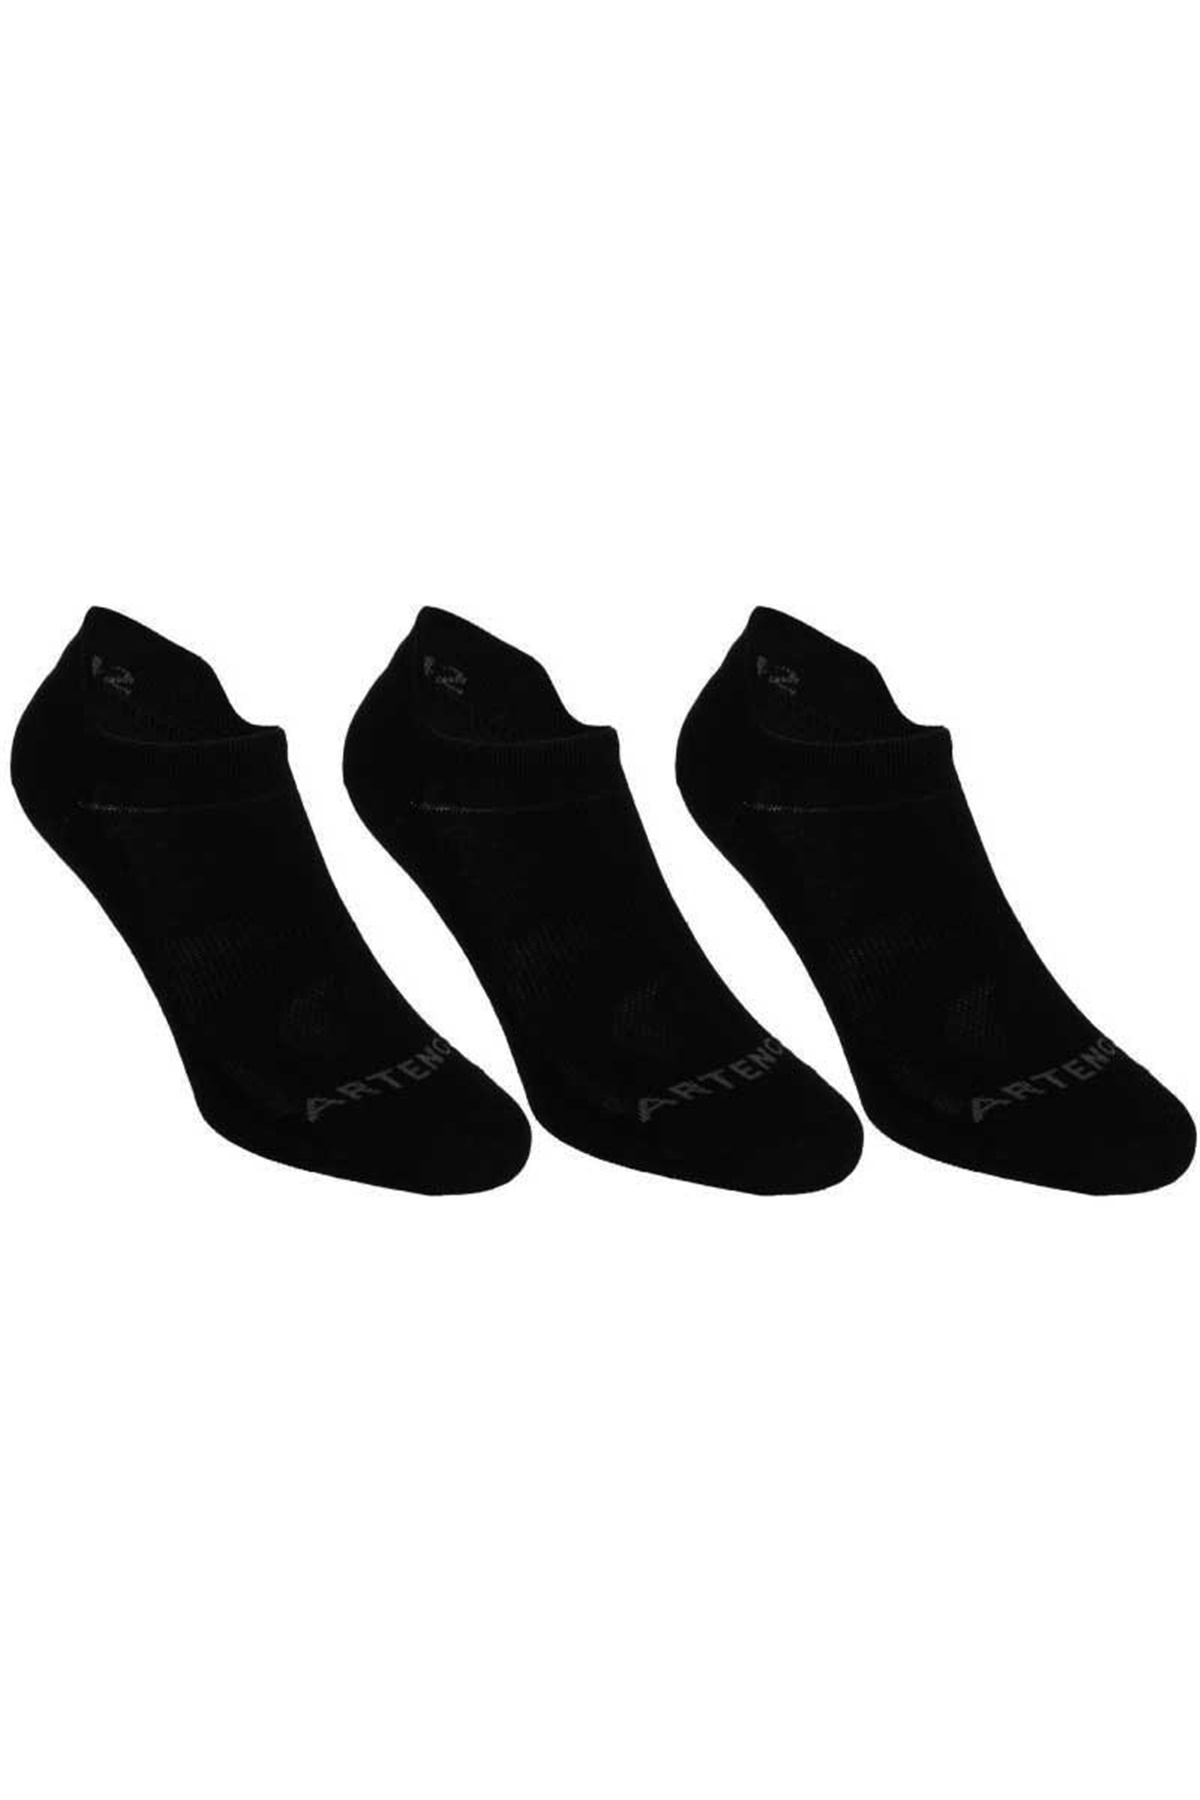 Sporcu Çorabı, Siyah Spor Çorabı C1144